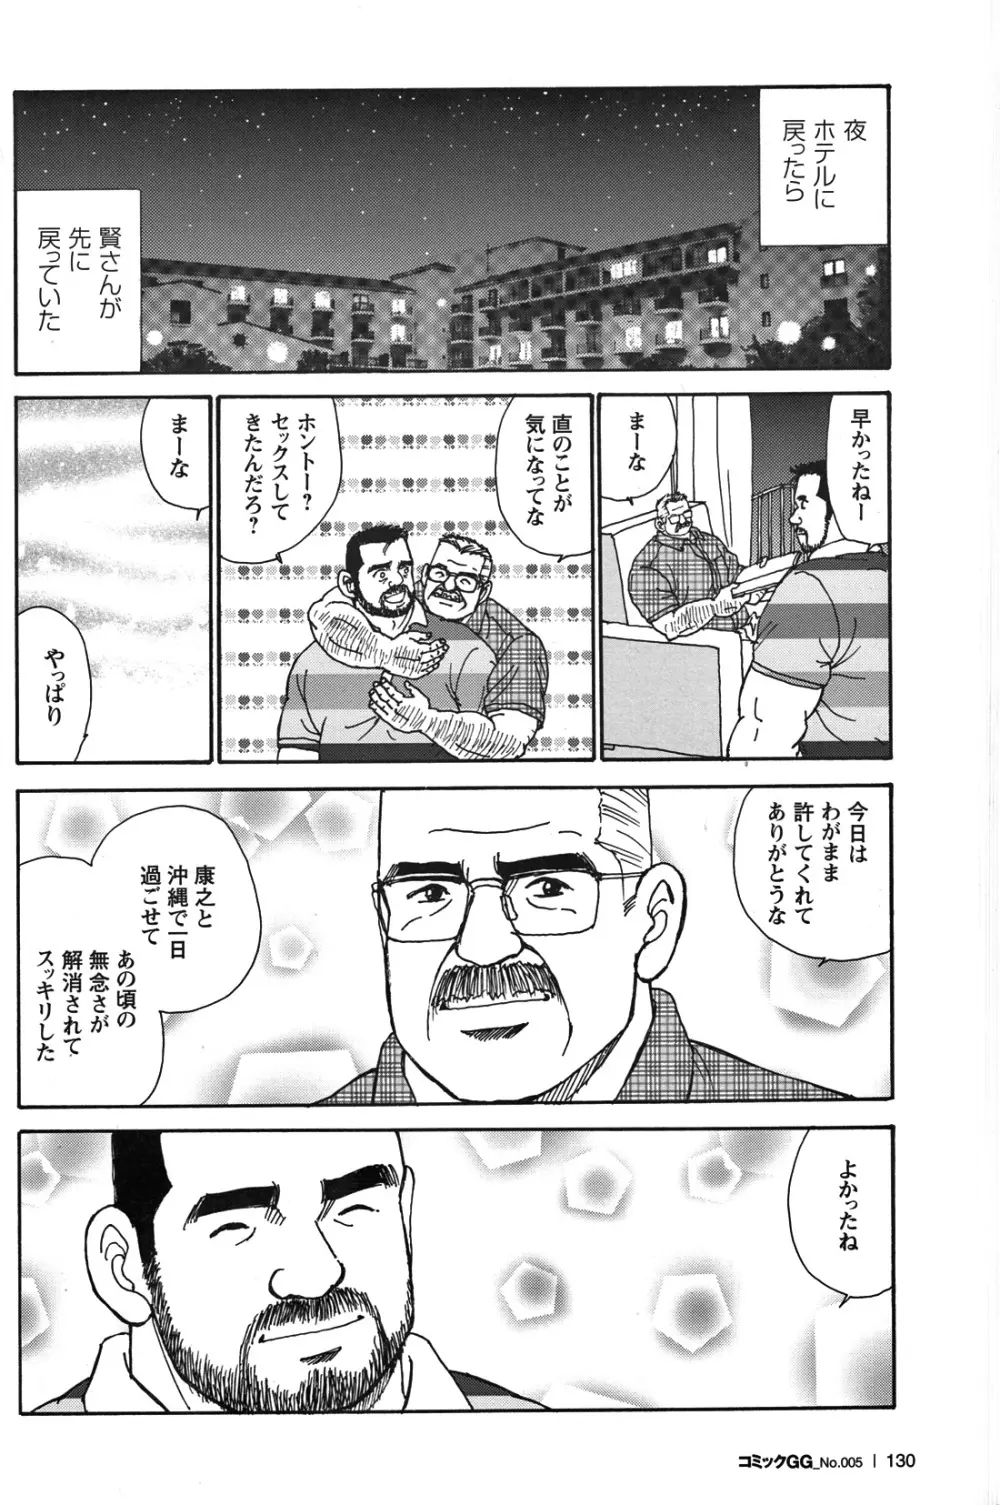 Comic G-men Gaho No.05 121ページ